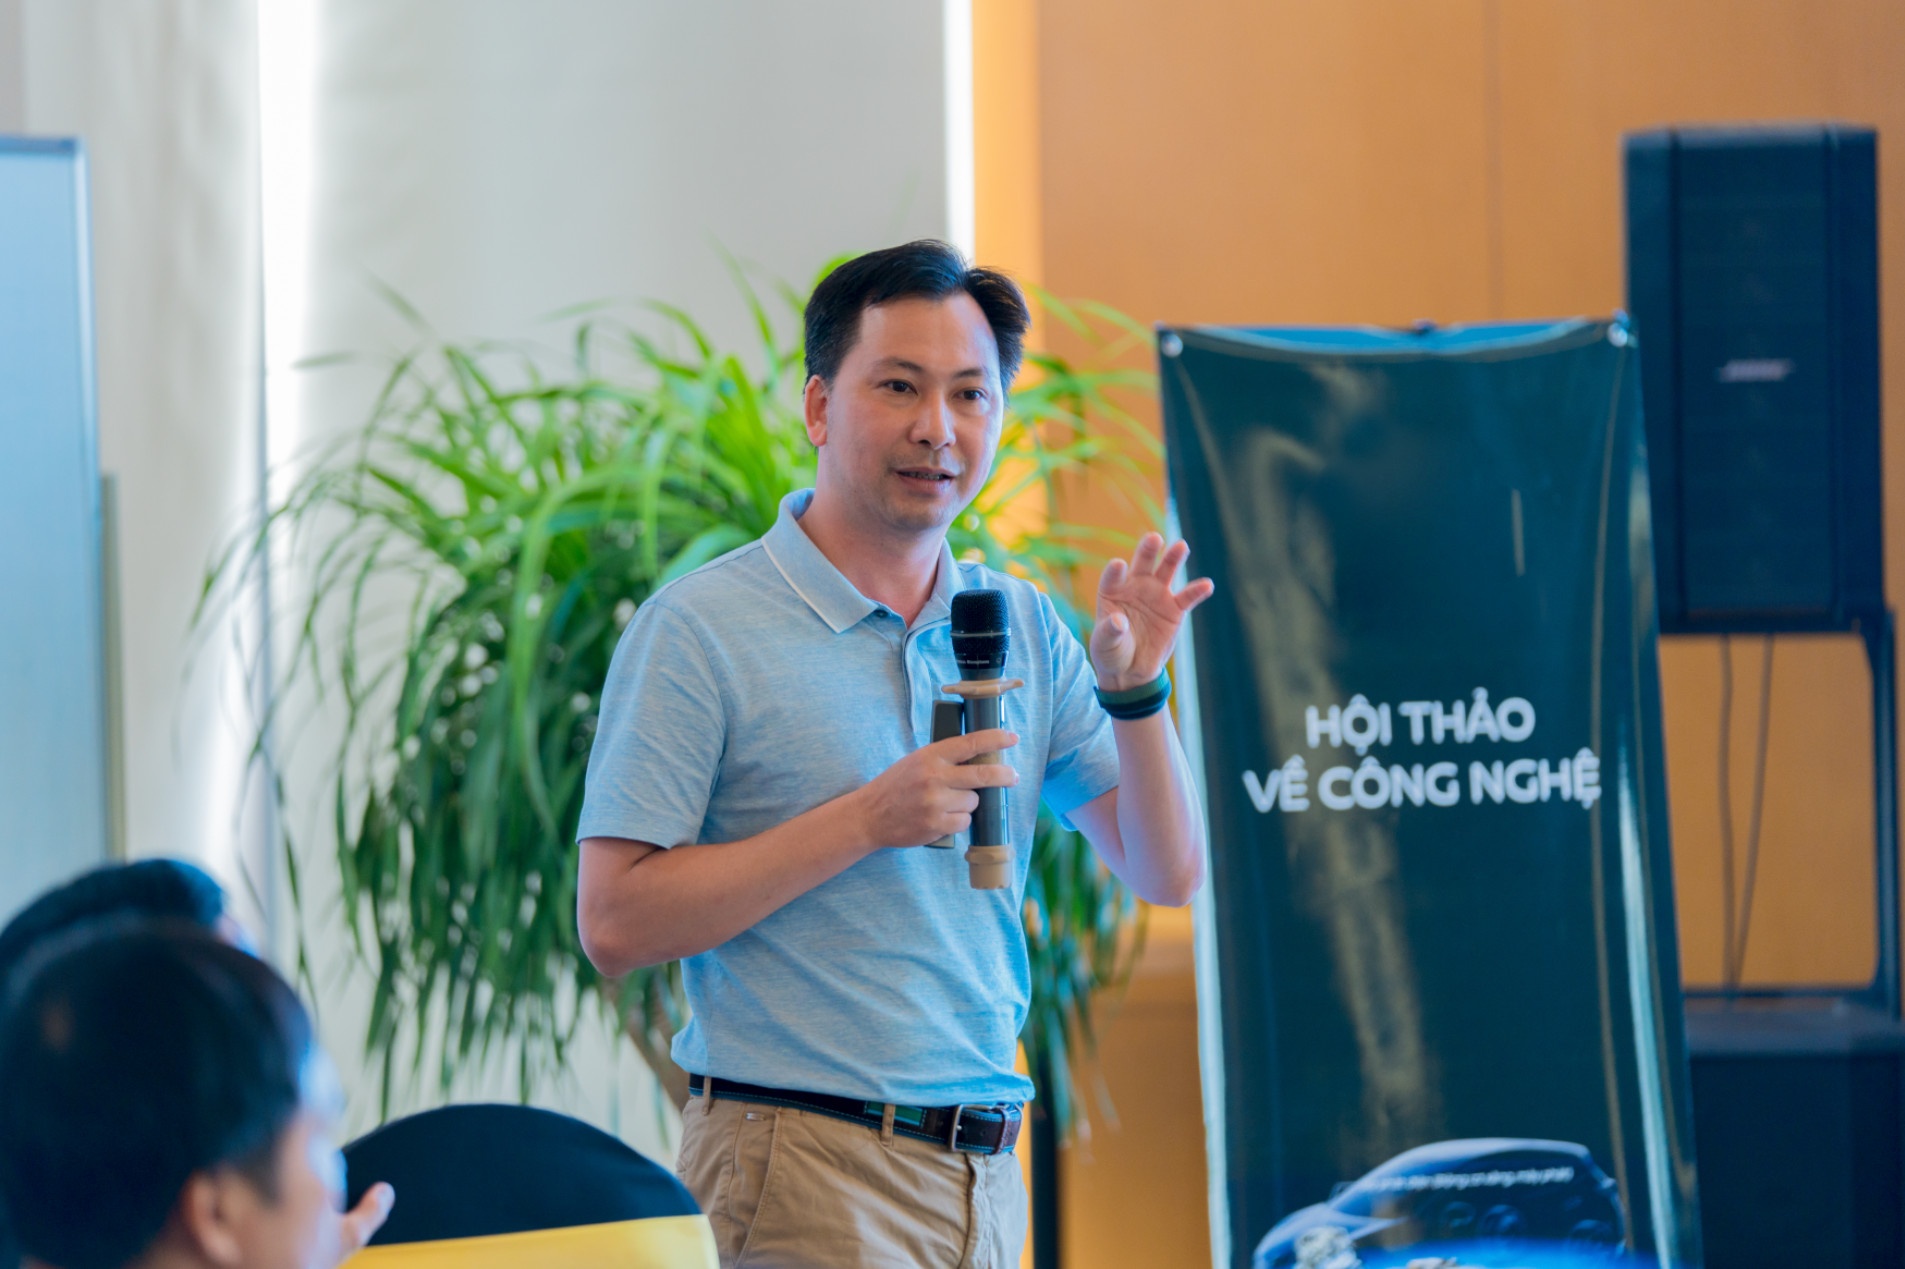 Công nghệ e-Power của Nissan - bước đệm phù hợp cho người Việt - ảnh 1